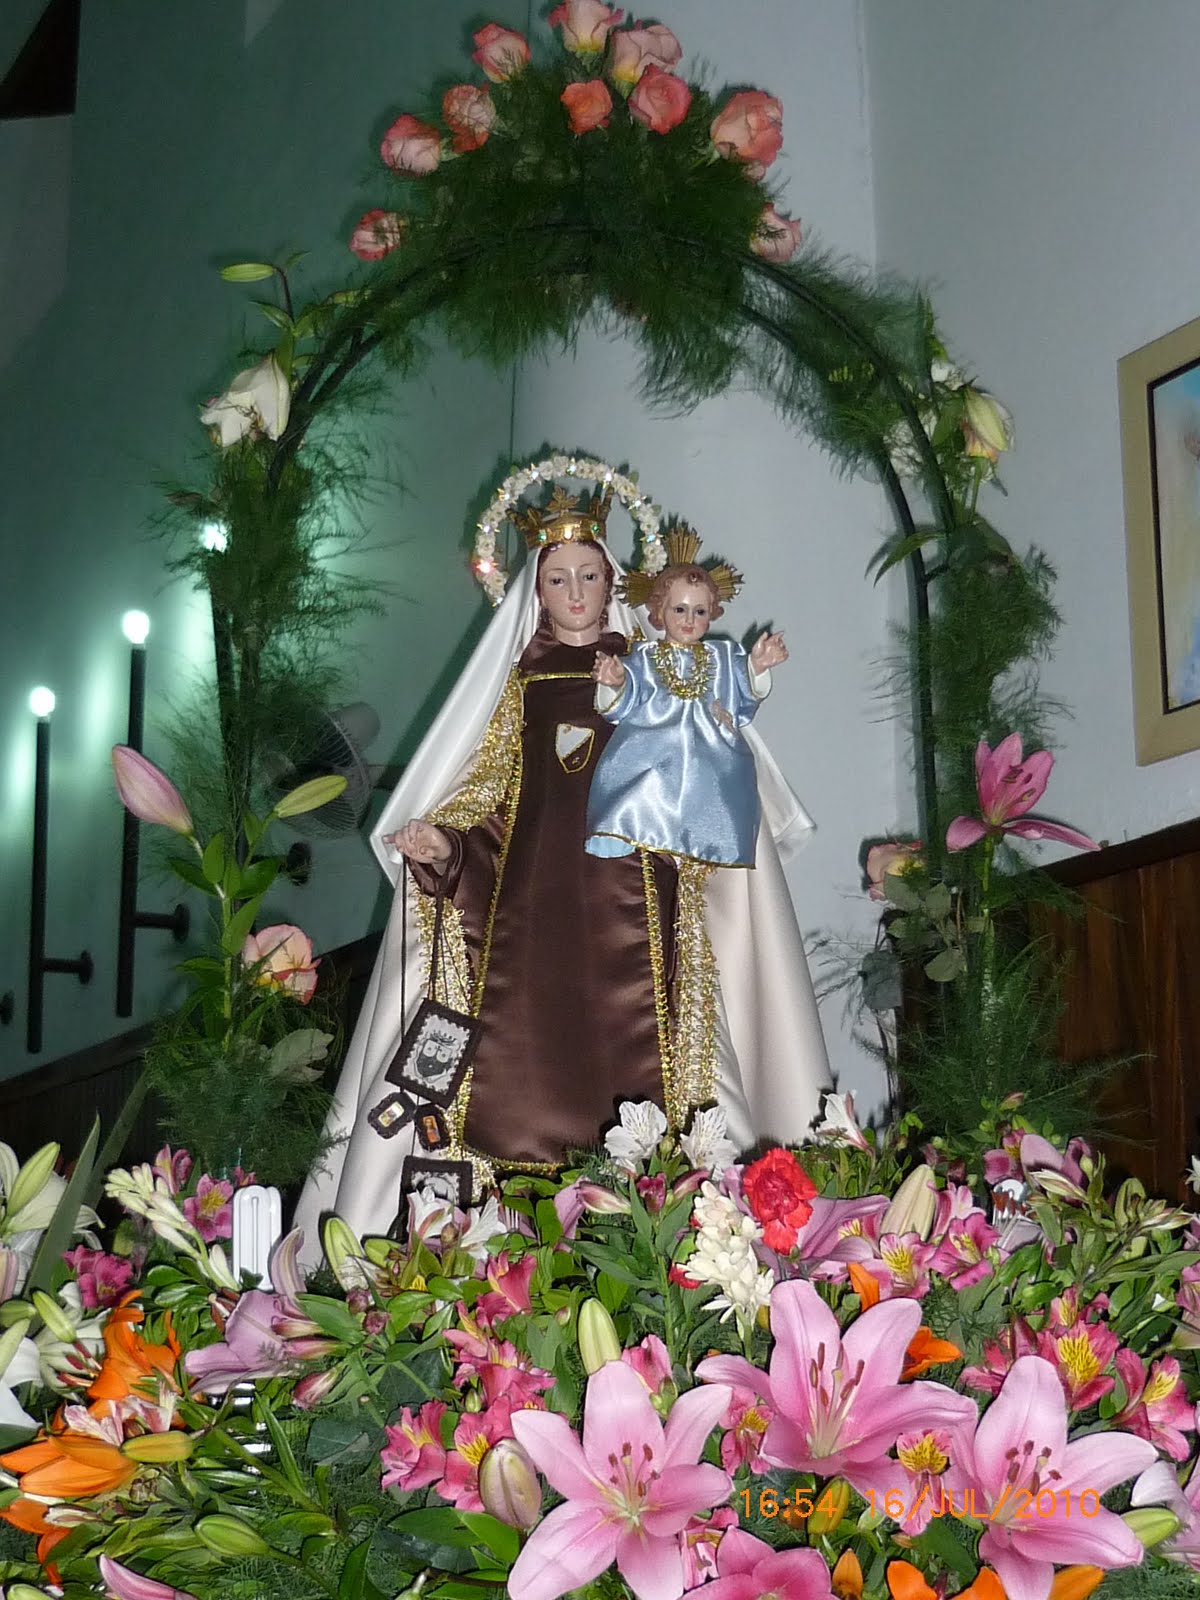 Respaldo a la devoción y no el desorden, Alcaldía adopta medidas para celebración del Día de la Virgen del Carmen